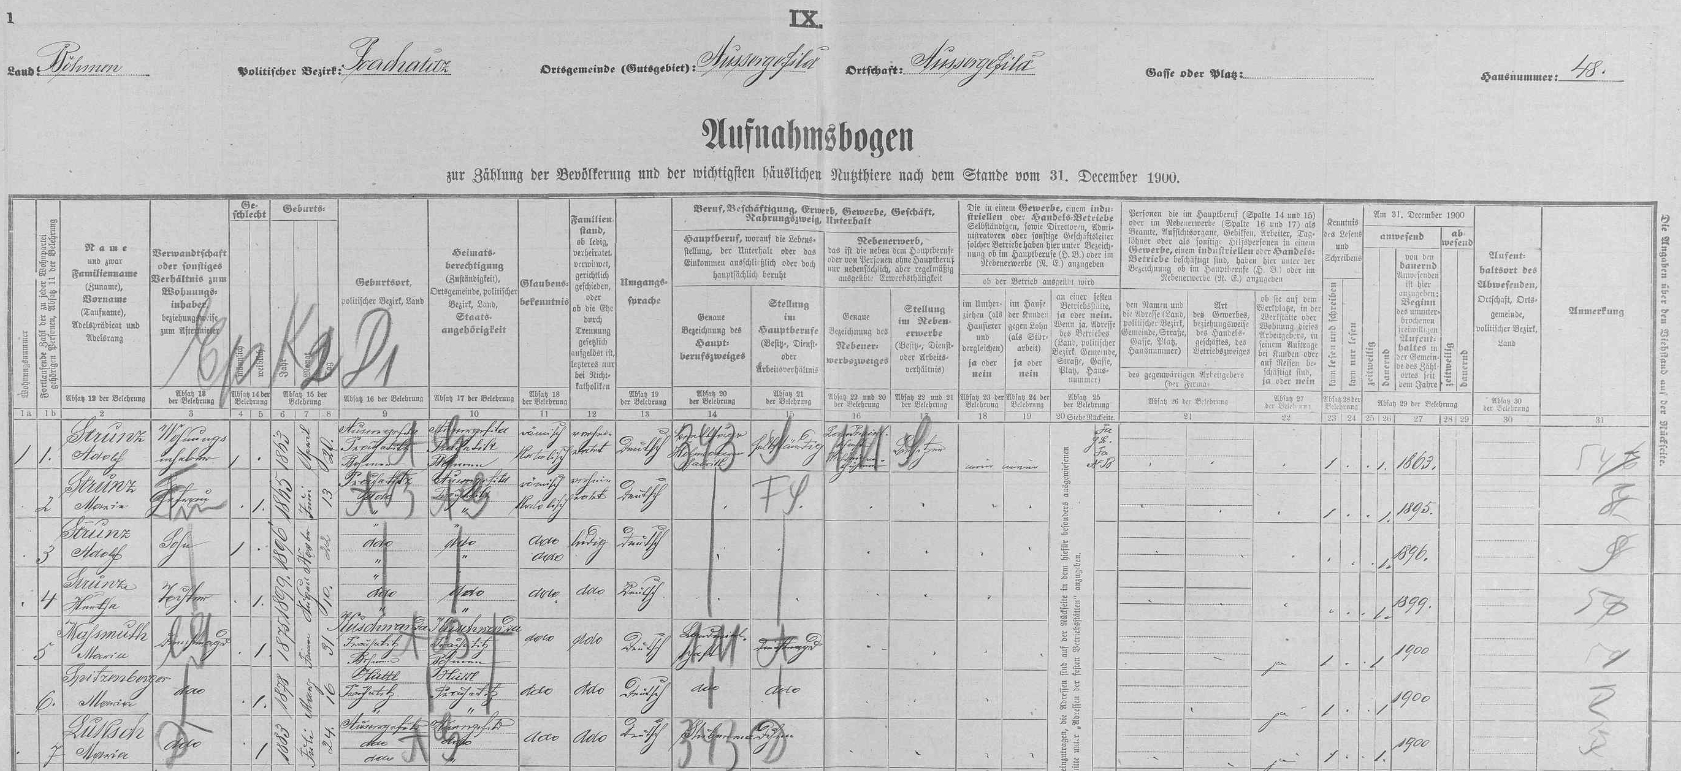 Arch sčítání lidu z roku 1900 pro dům čp. 48 v Kvildě s rodinou Strunzových a třemi jejími služebnými